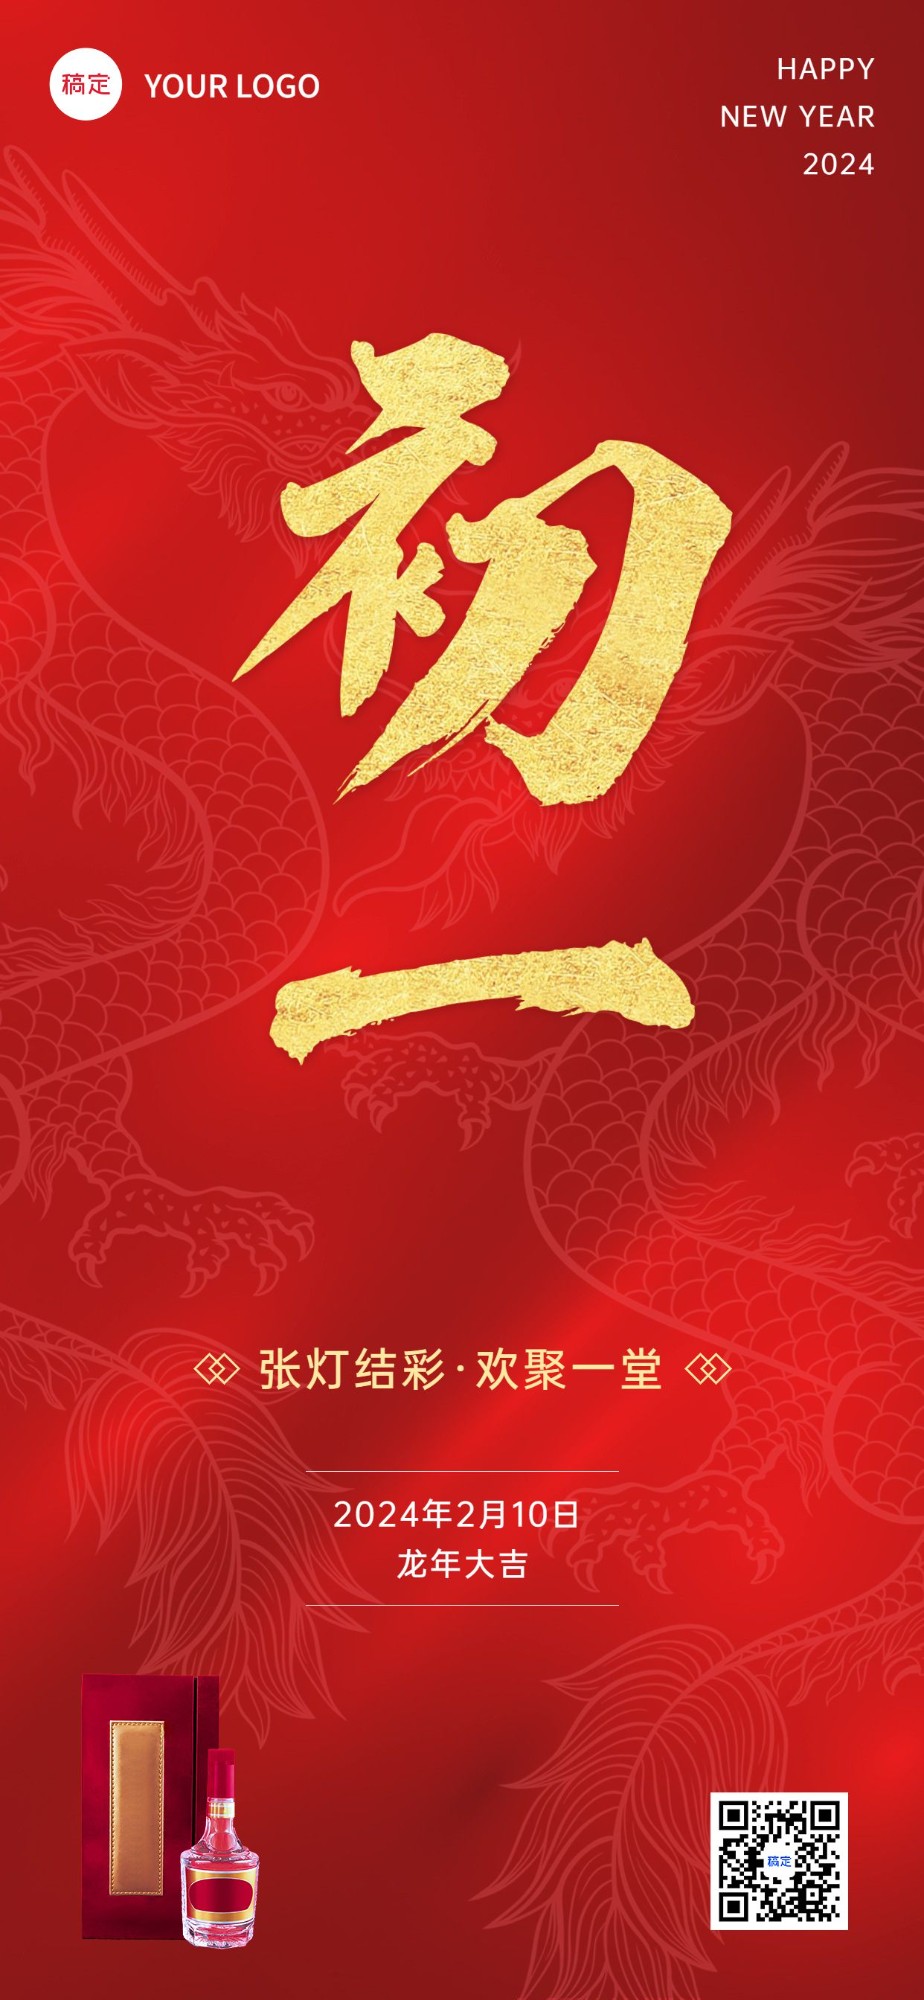 春节龙年初一节日祝福酒产品展示中式喜庆感全屏竖版海报